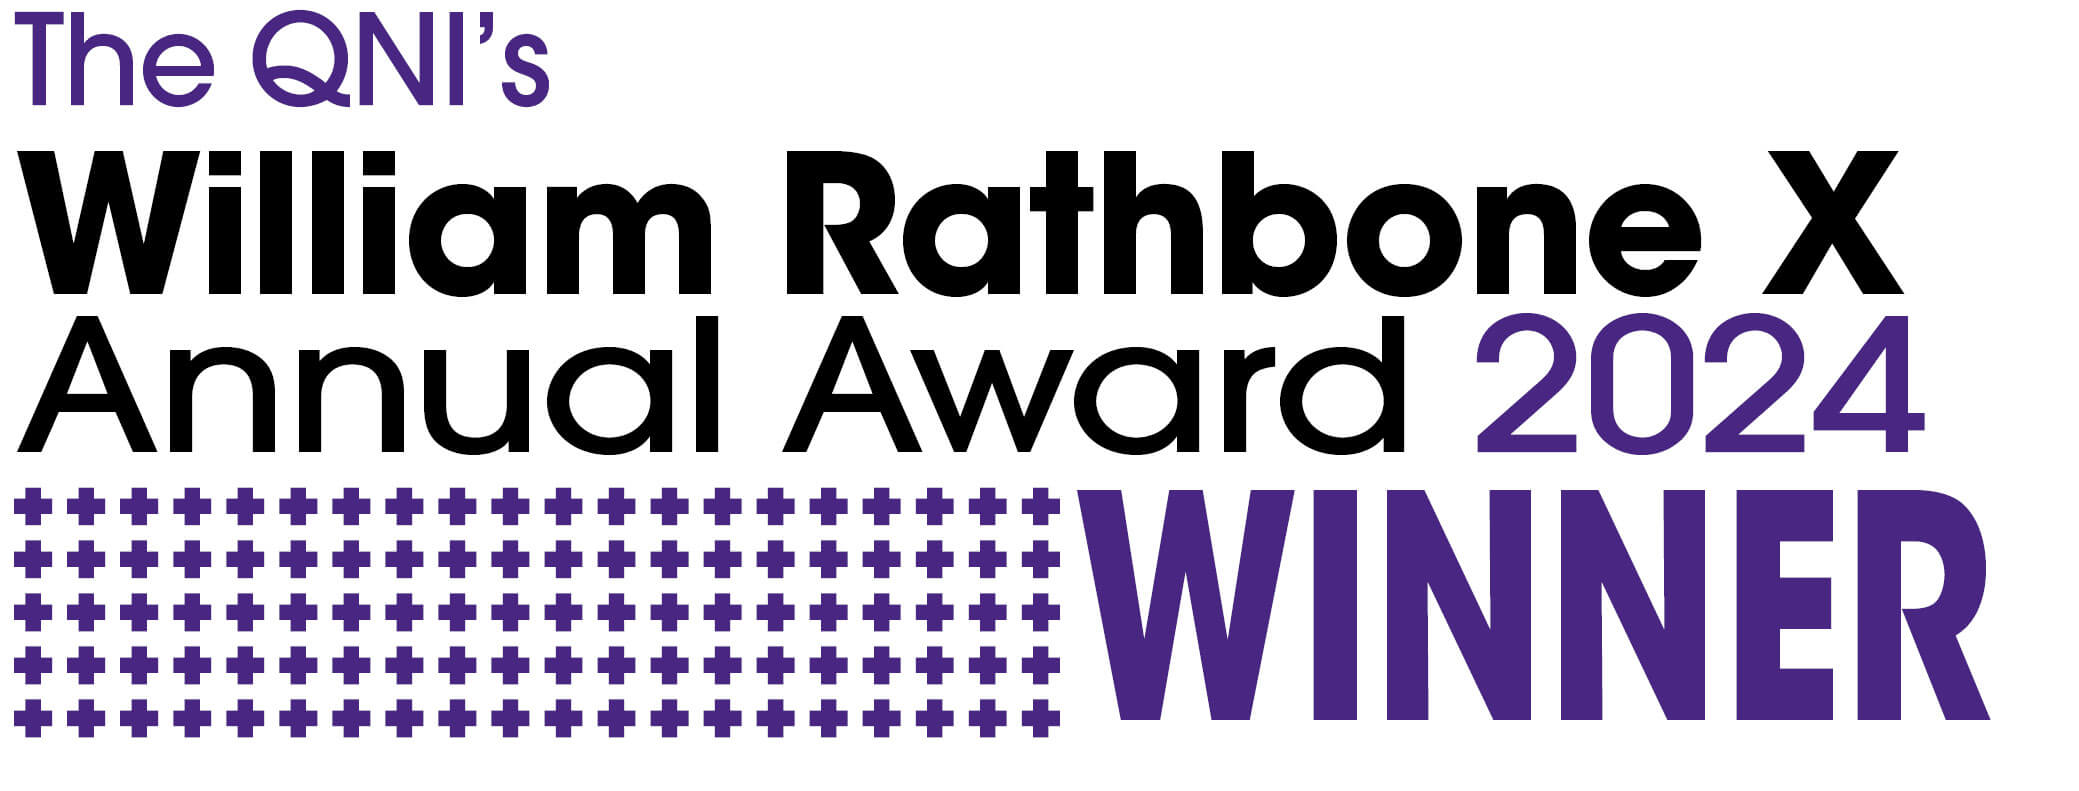 William Rathbone Awards 2024 winner - Executive Nurse Leadership